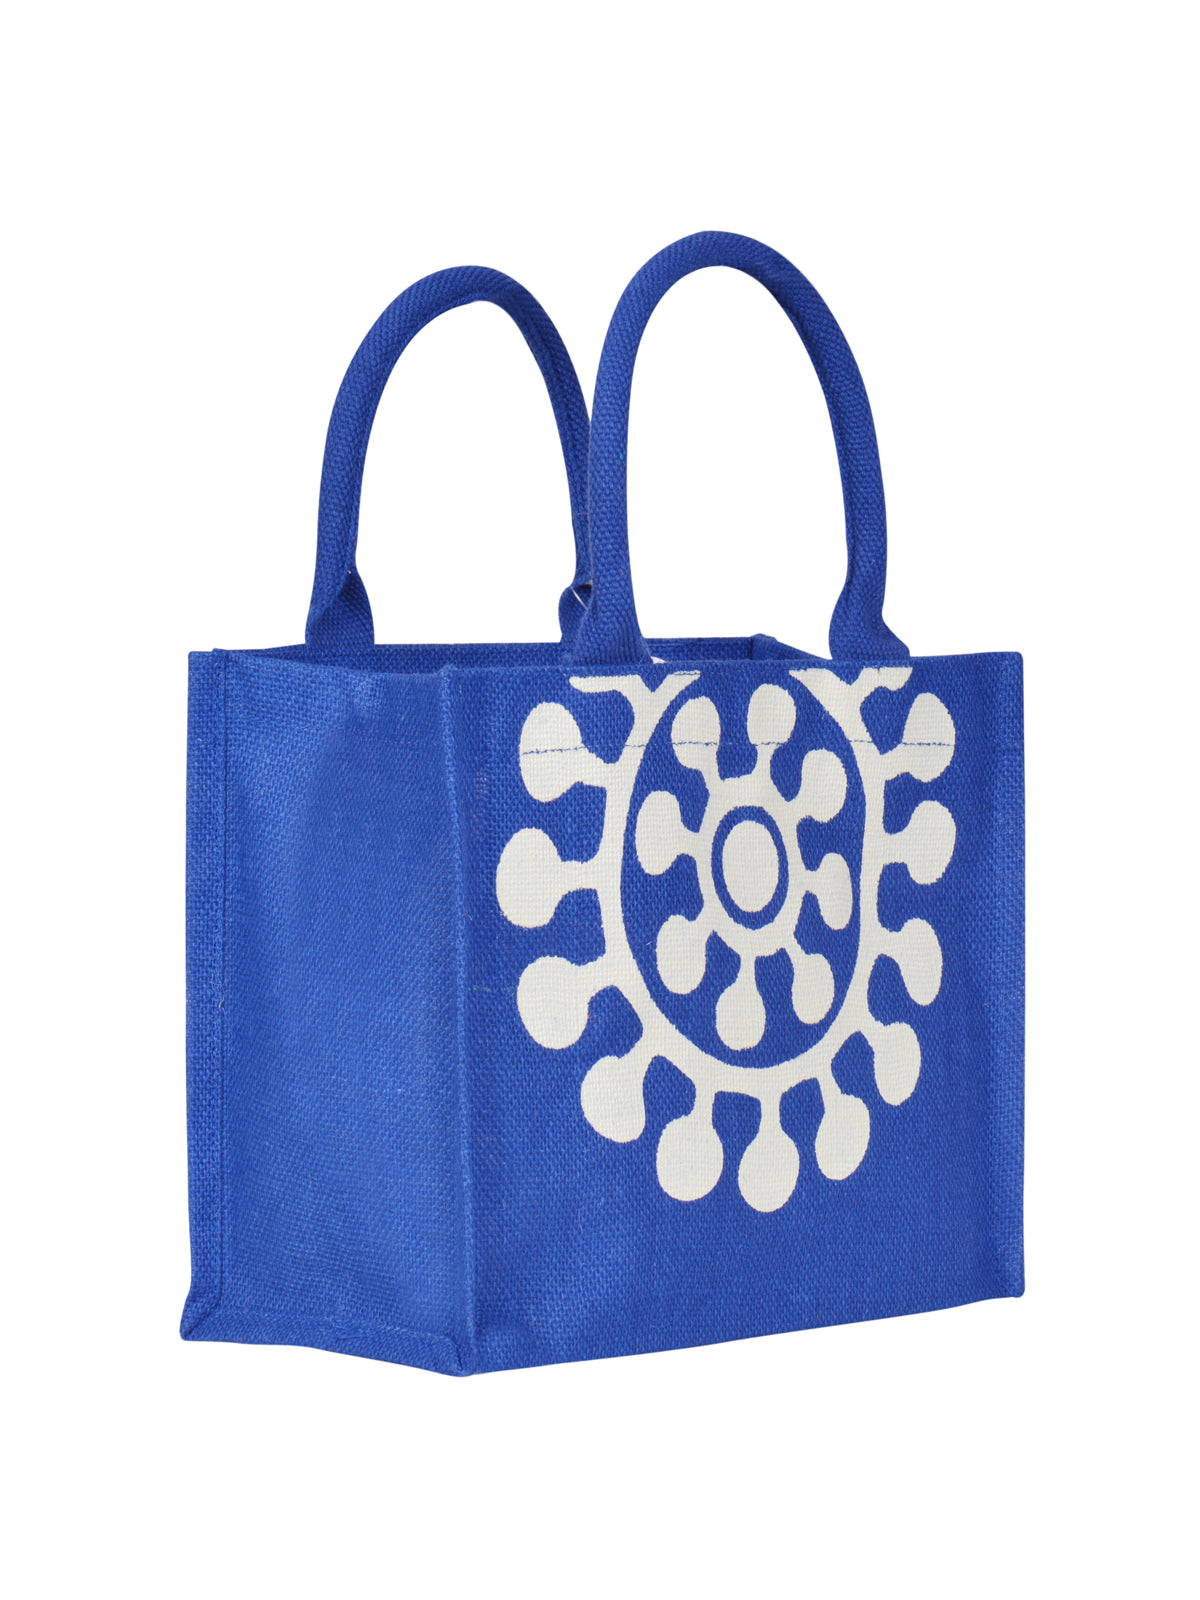 Slim Line Starched Jute Supermarket Bag | Jute bags, Bags, Jute bags online